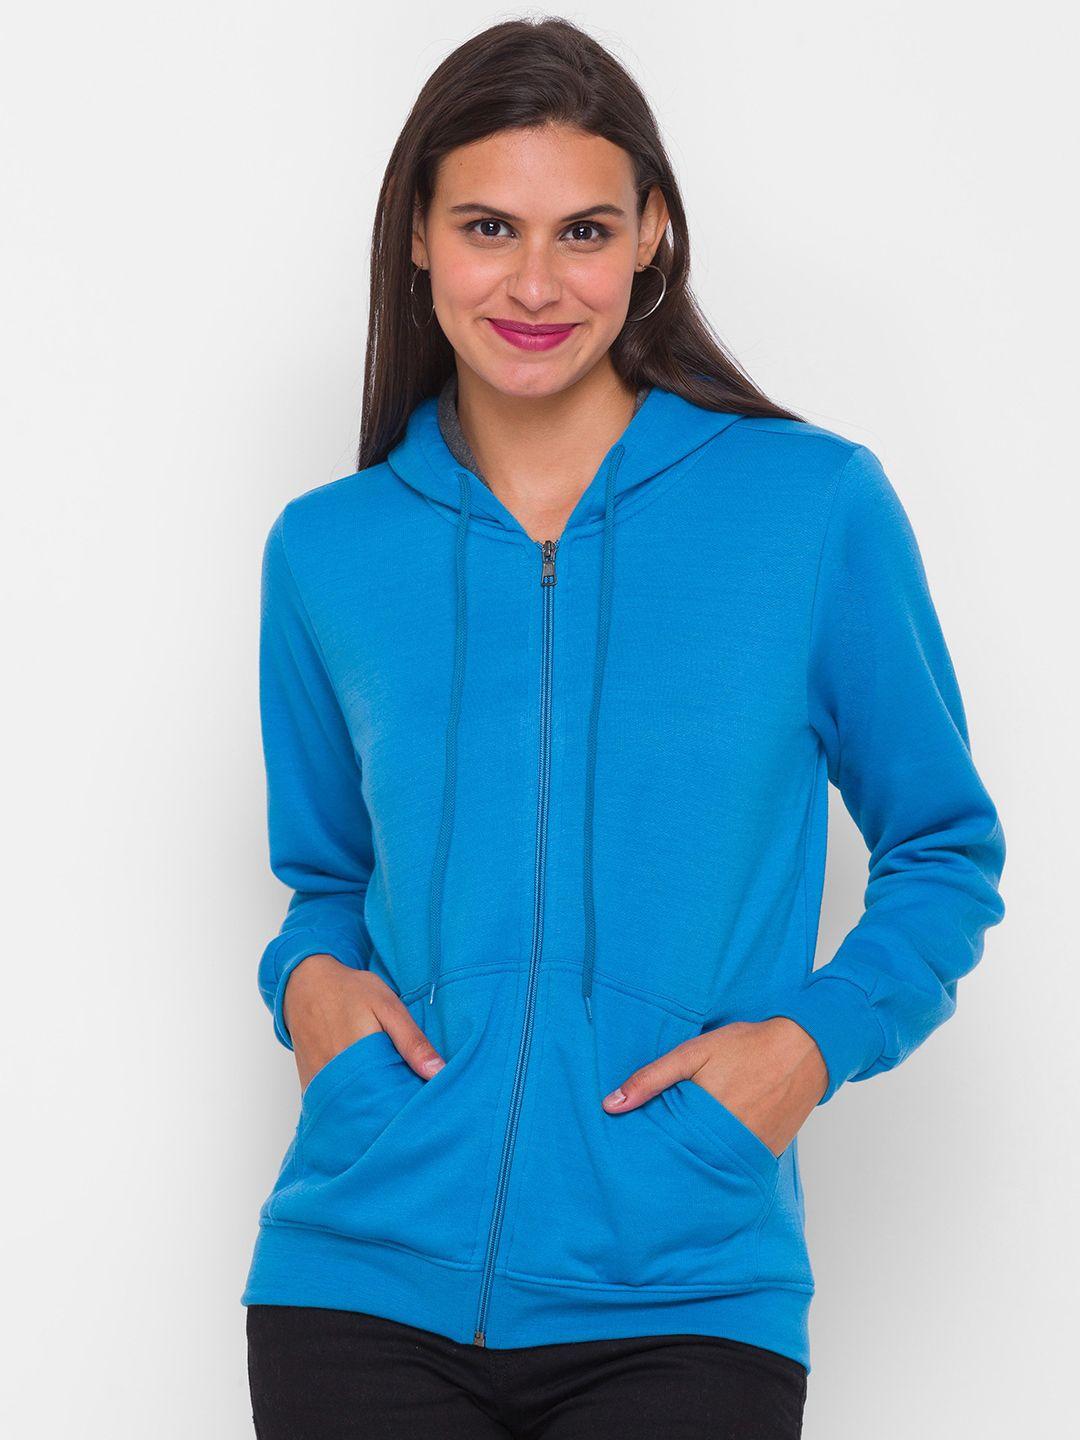 globus women turquoise blue hooded sweatshirt